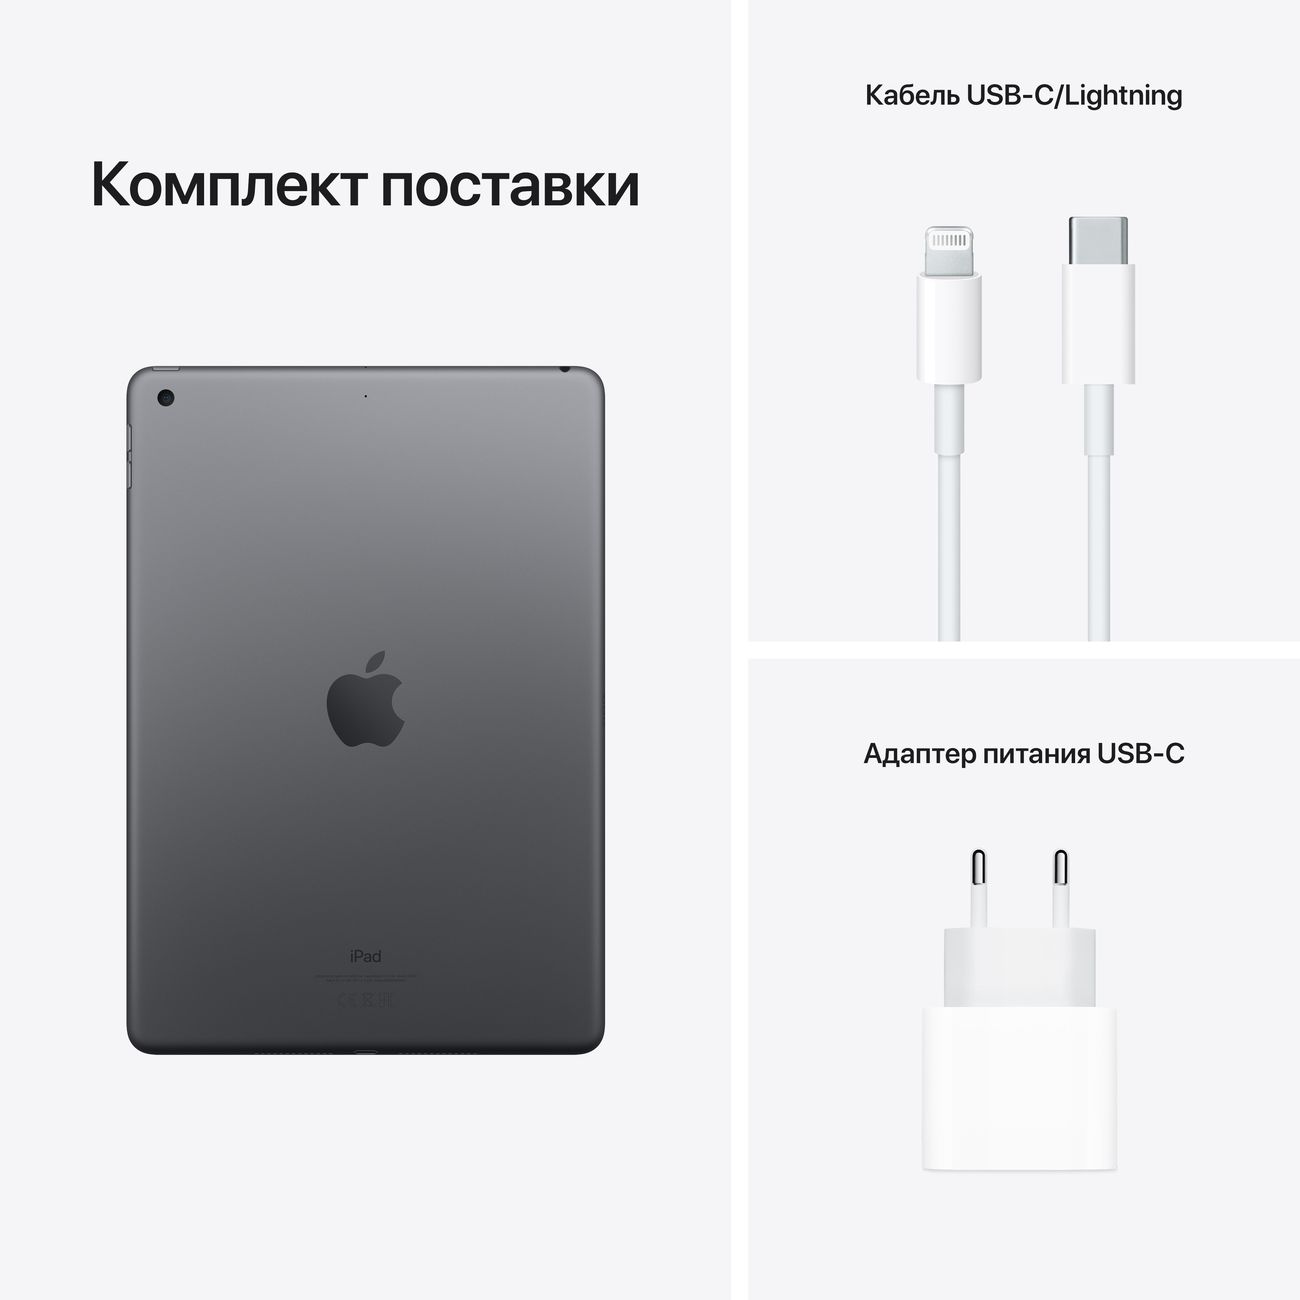 Купить планшет apple ipad 10.2 wi-fi 256gb space grey (mk2n3) Apple iPad в официальном магазине Apple, Samsung, Xiaomi. iPixel.ru Купить, заказ, кредит, рассрочка, отзывы,  характеристики, цена,  фотографии, в подарок.